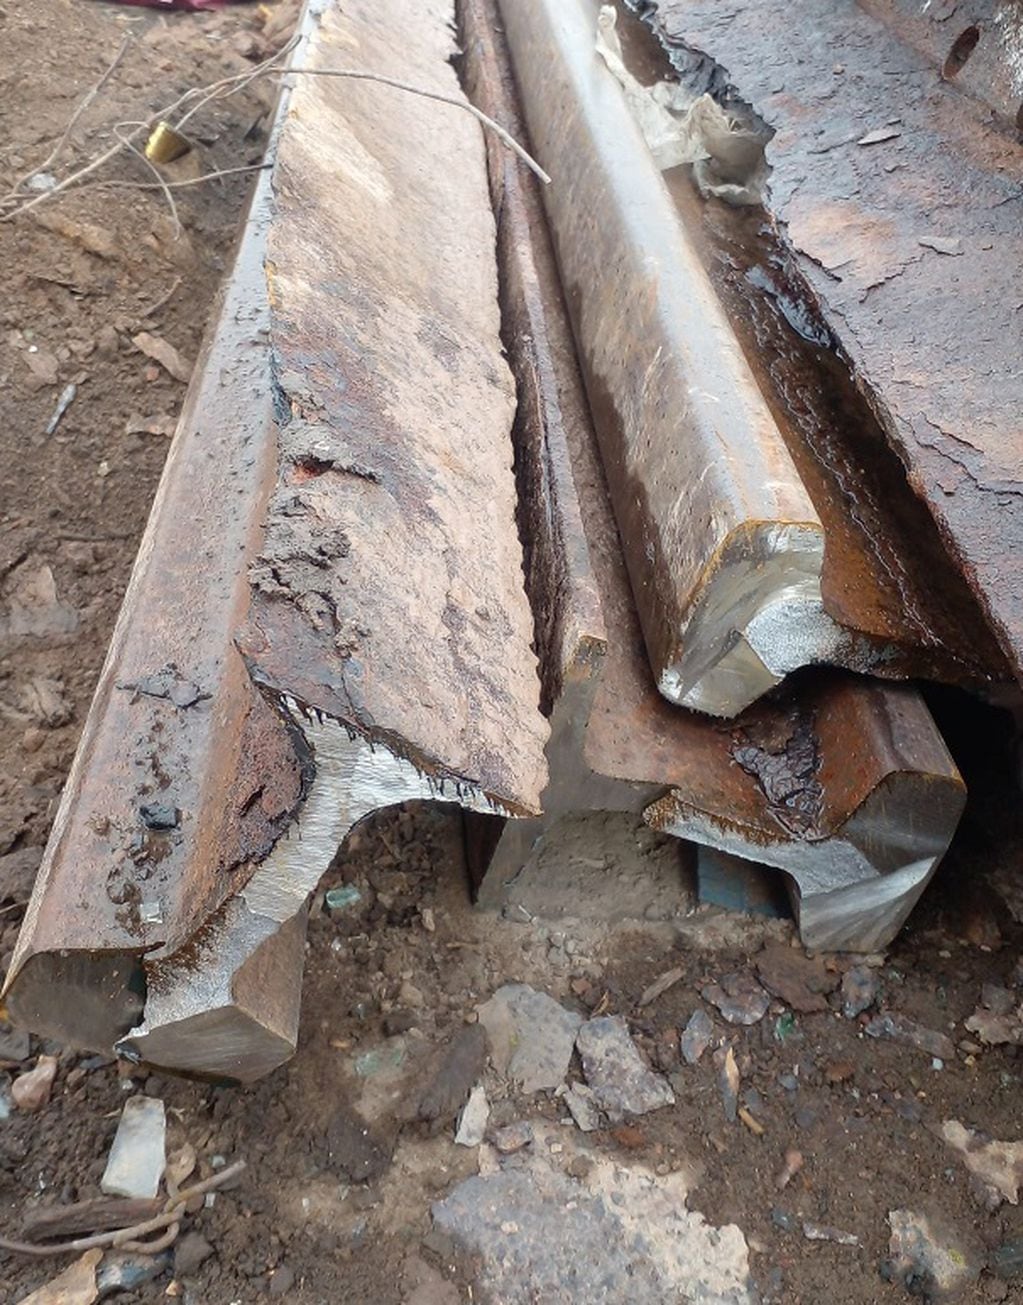 Secuestraron casi 20 toneladas de hierro que habían sido robadas de las vías en Guaymallén. | Foto: Ministerio de Seguridad y Justicia